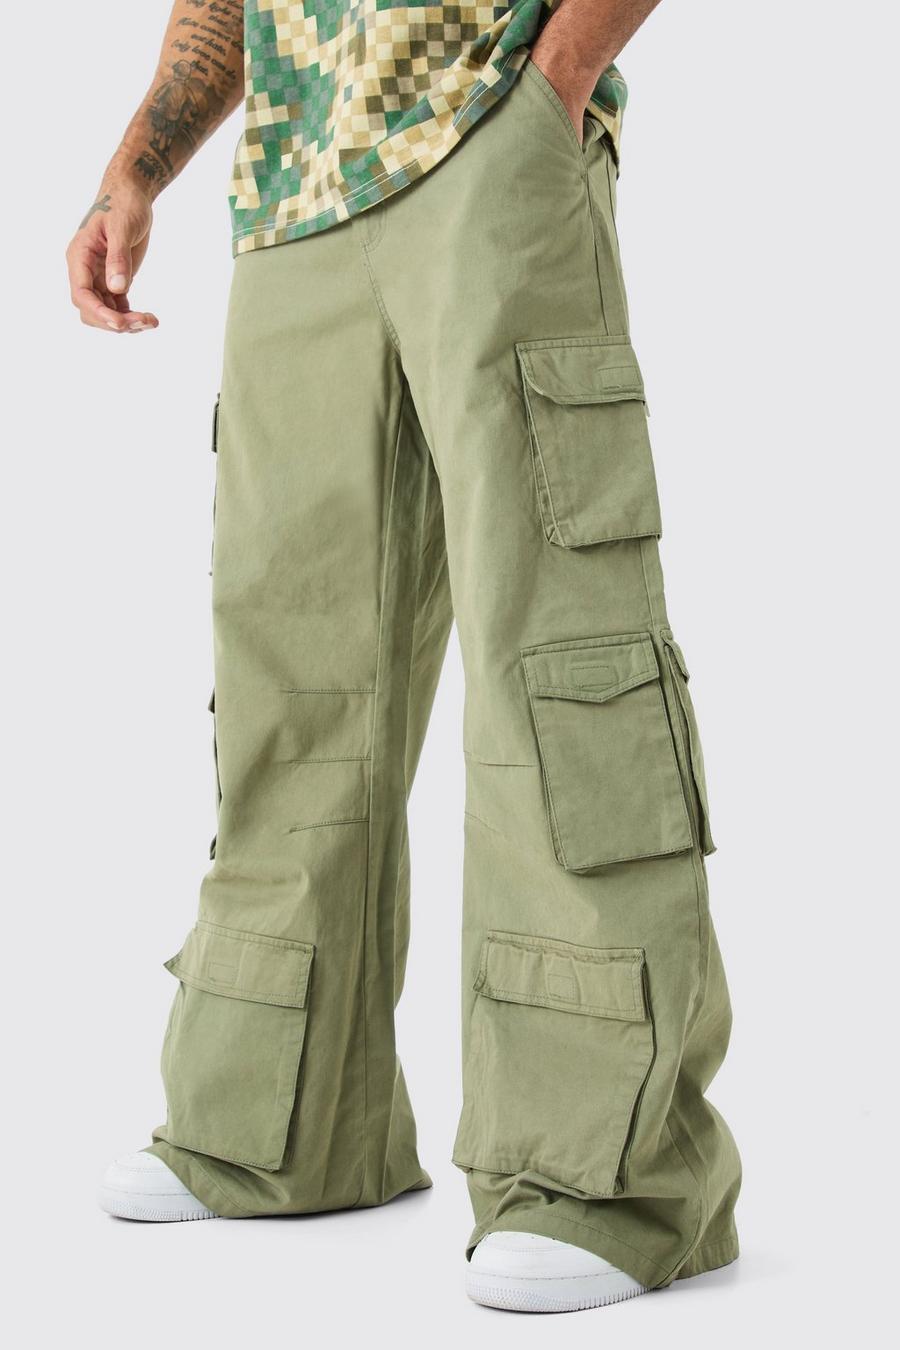 Pantaloni super comodi in denim rigido con tasche Cargo multiple, Khaki